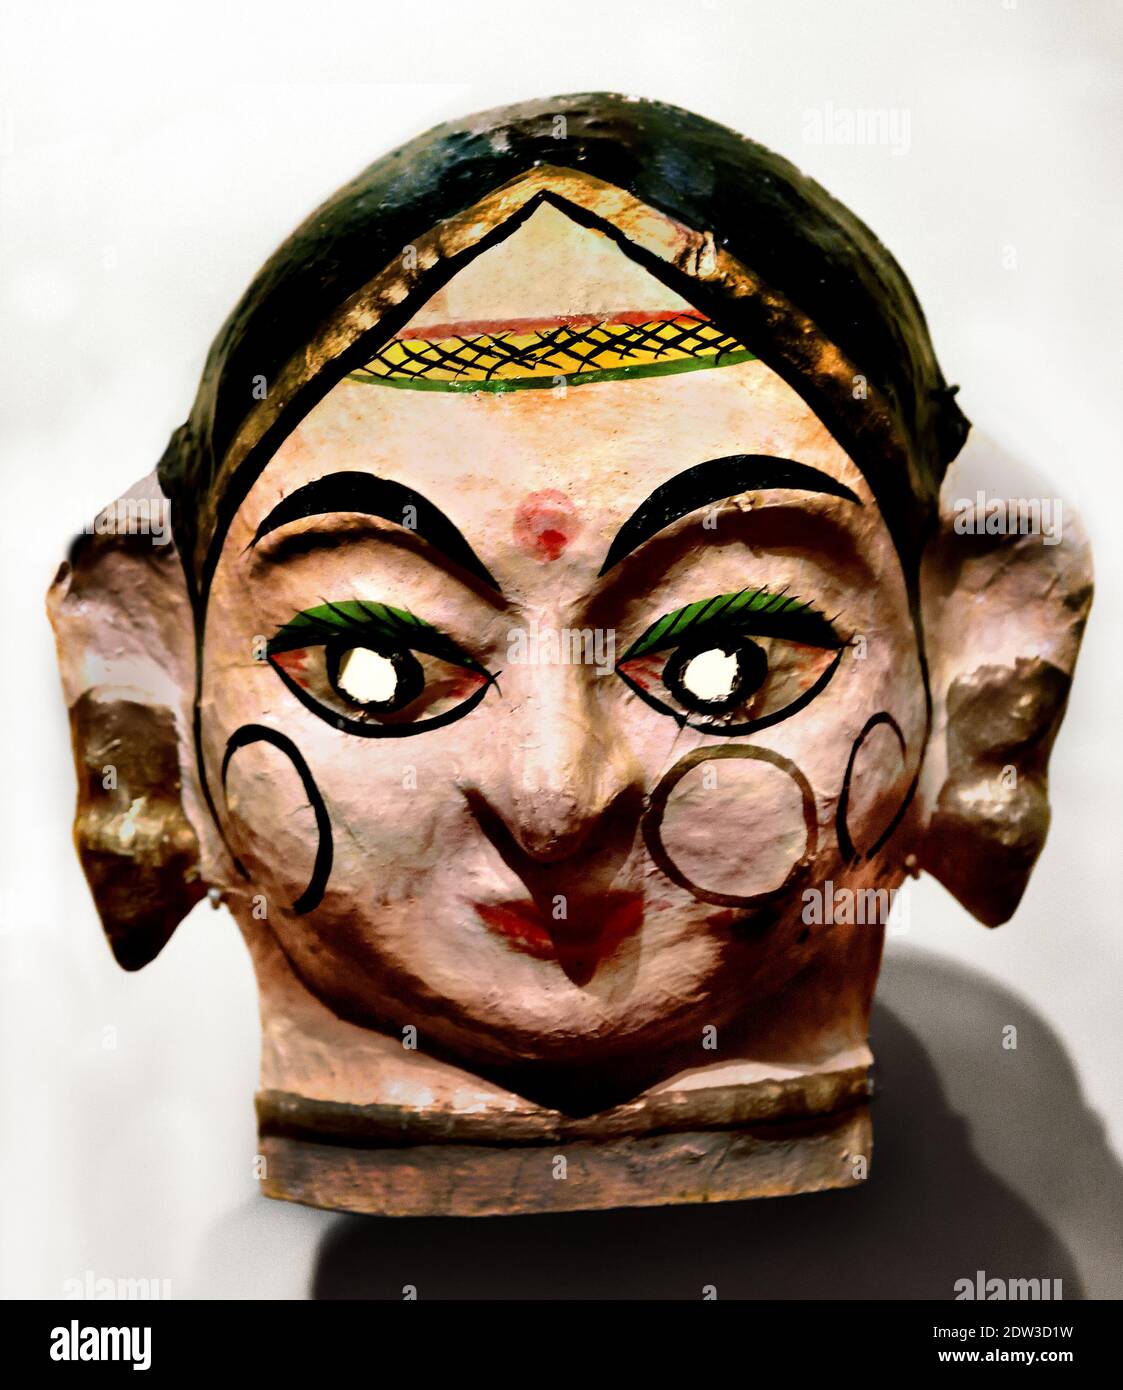 Dance Mask festival di Dussehra giochi sono eseguiti nel nord dell'India, in onore del dio Rama, l'eroe del Ramayana epico indiano, ( indù dio Rama, Râm, Ramachandra. ) Foto Stock